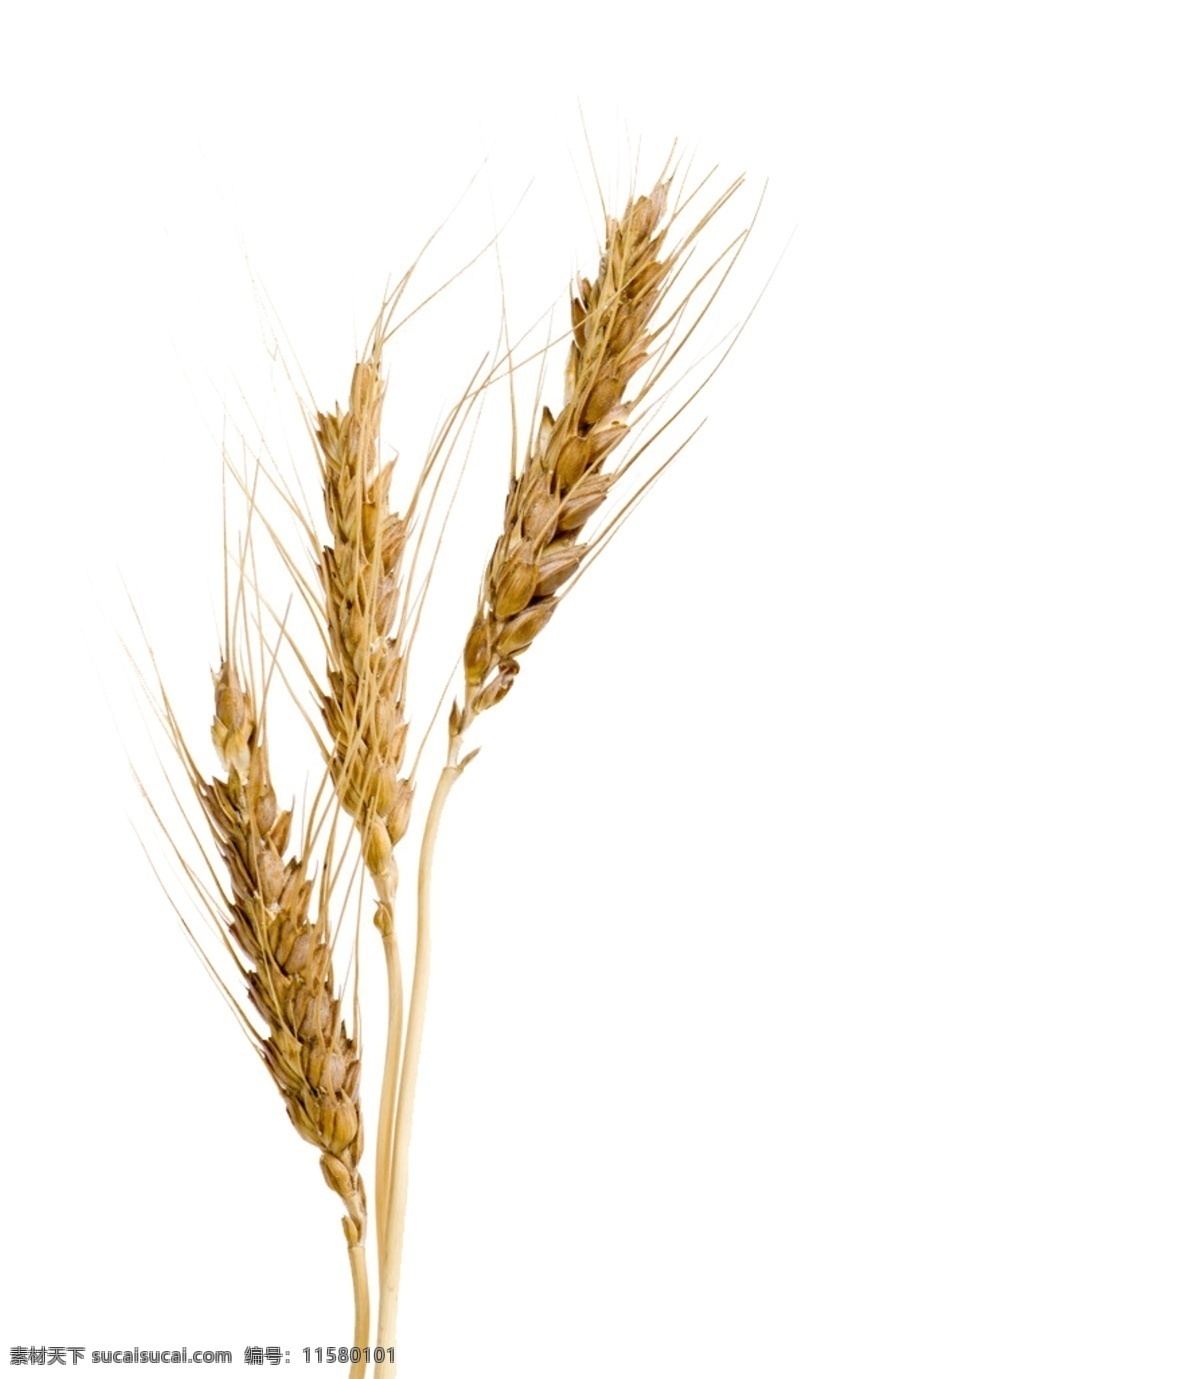 大麦 健康 麦子 食物 免抠麦子 psd源文件